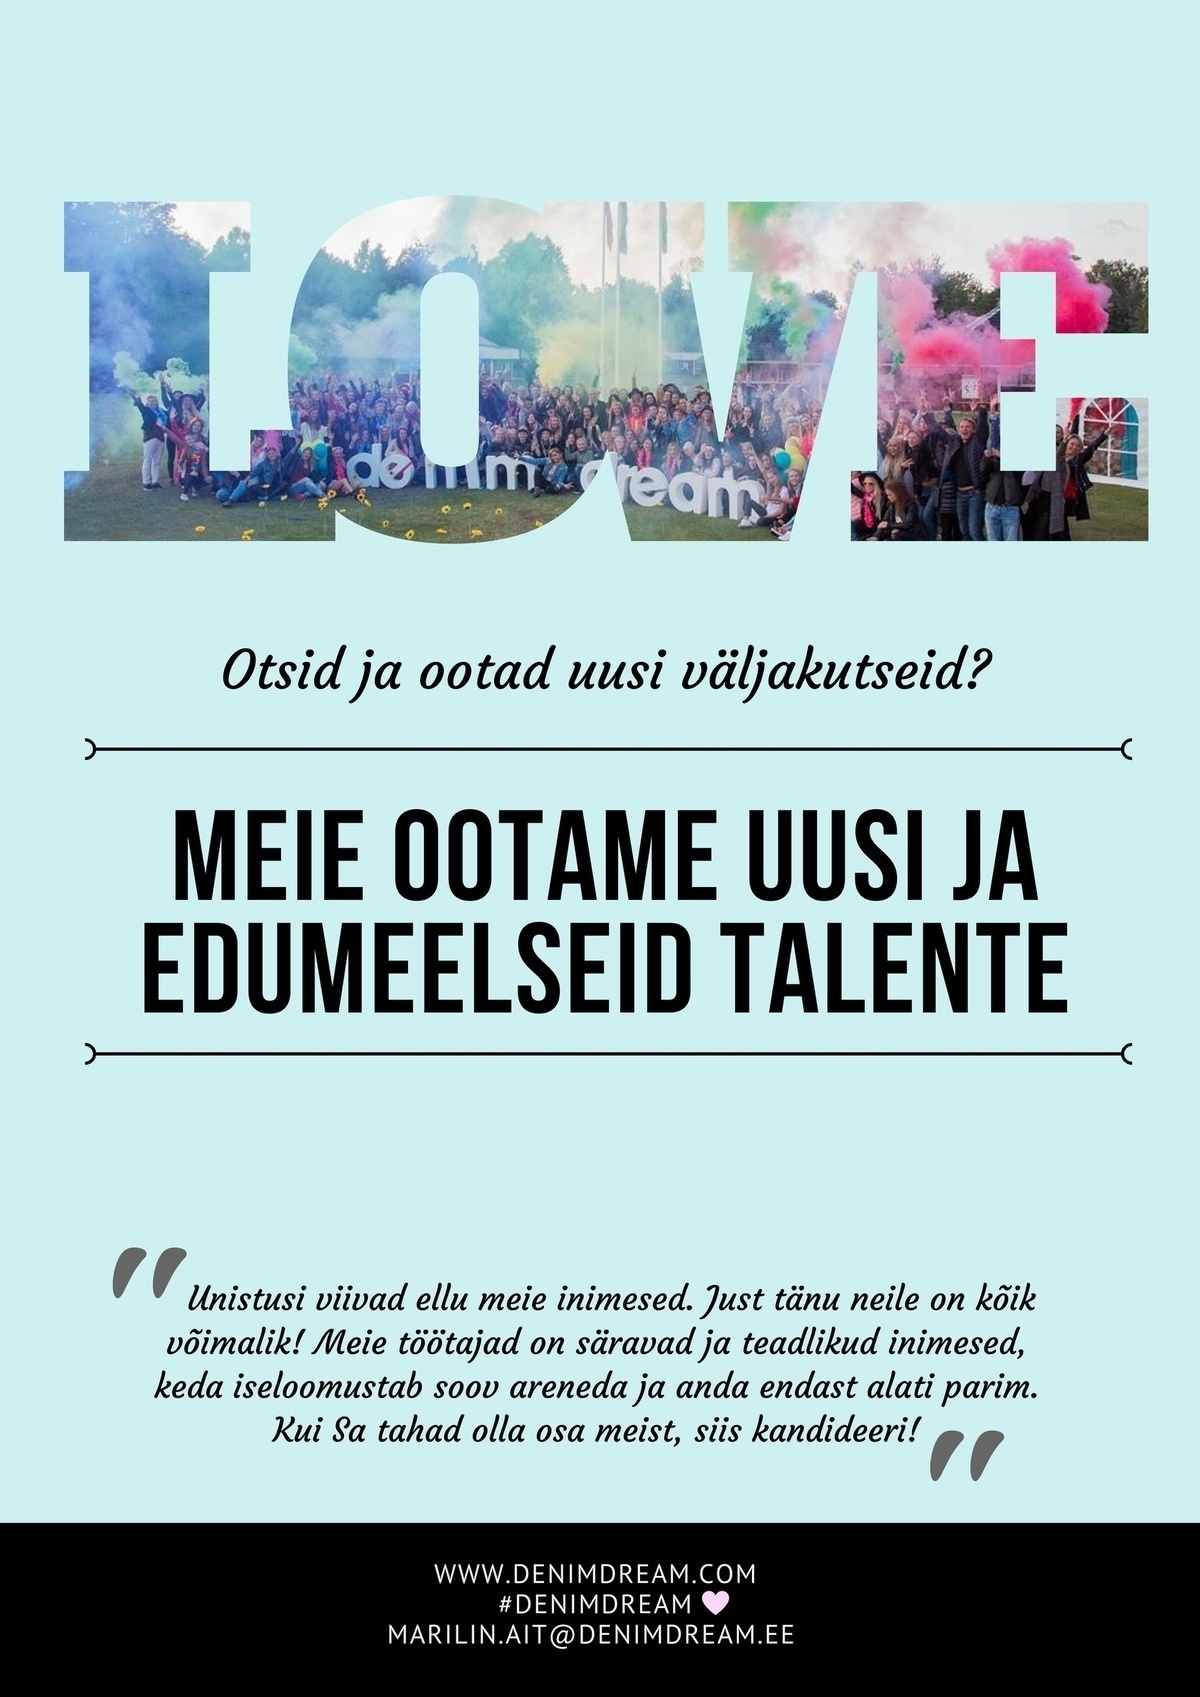 Põldma Kaubanduse AS Tule Denim Dreami MÜÜGIKONSULTANDIKS! (Tallinn)